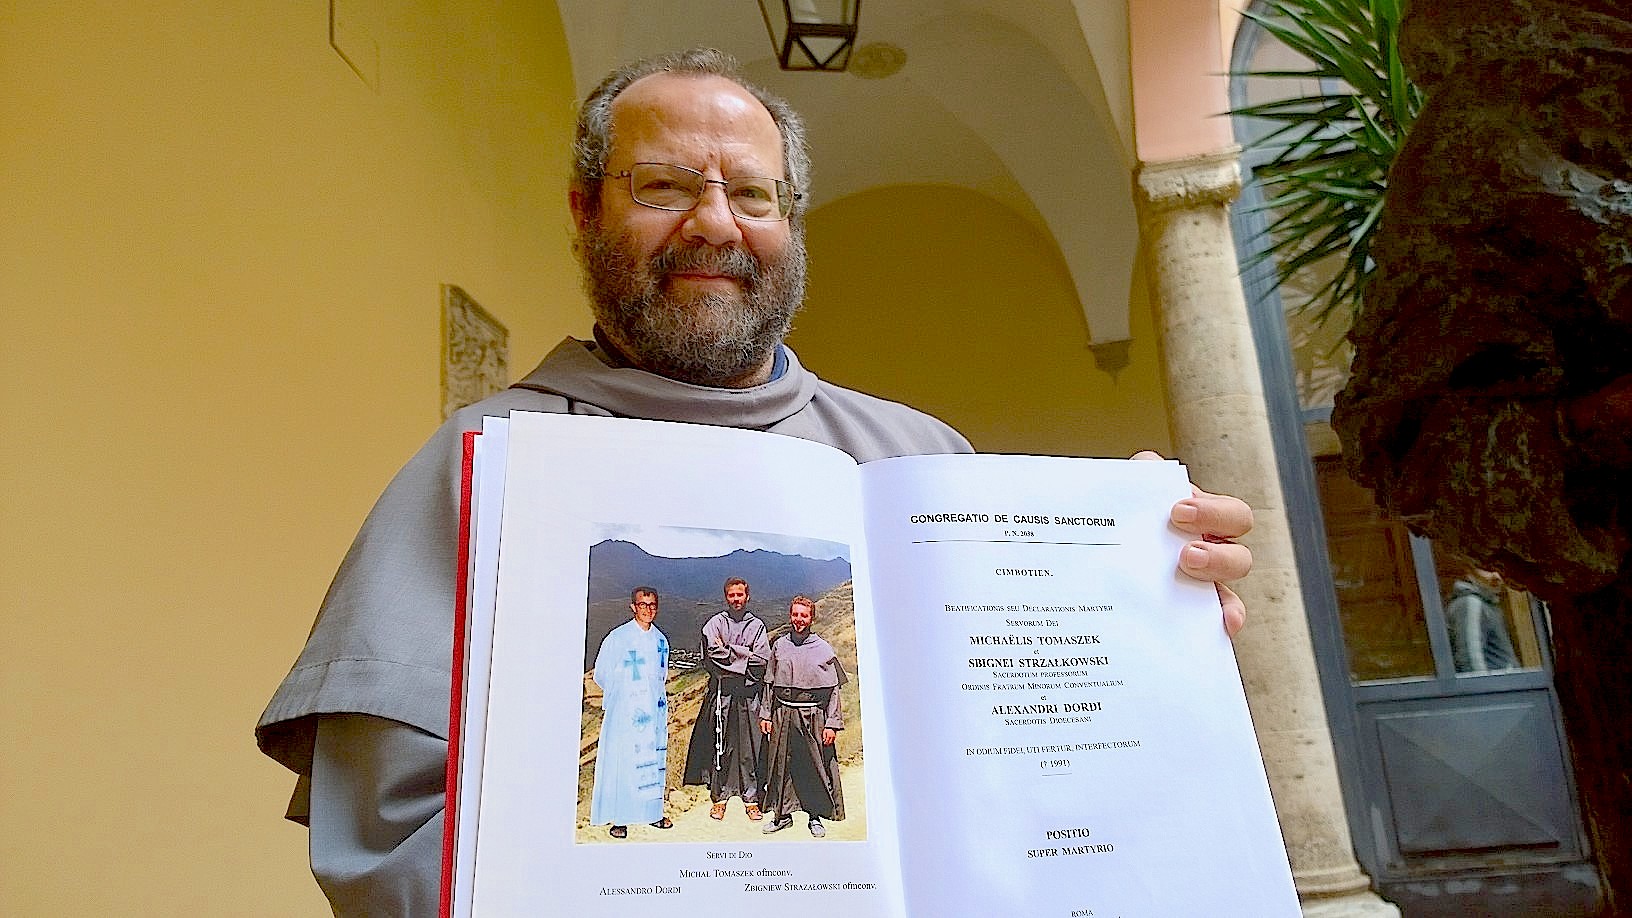 Fray Angelo Paleri postulator of priest died by Sendero Luminoso in Perú - april 2015